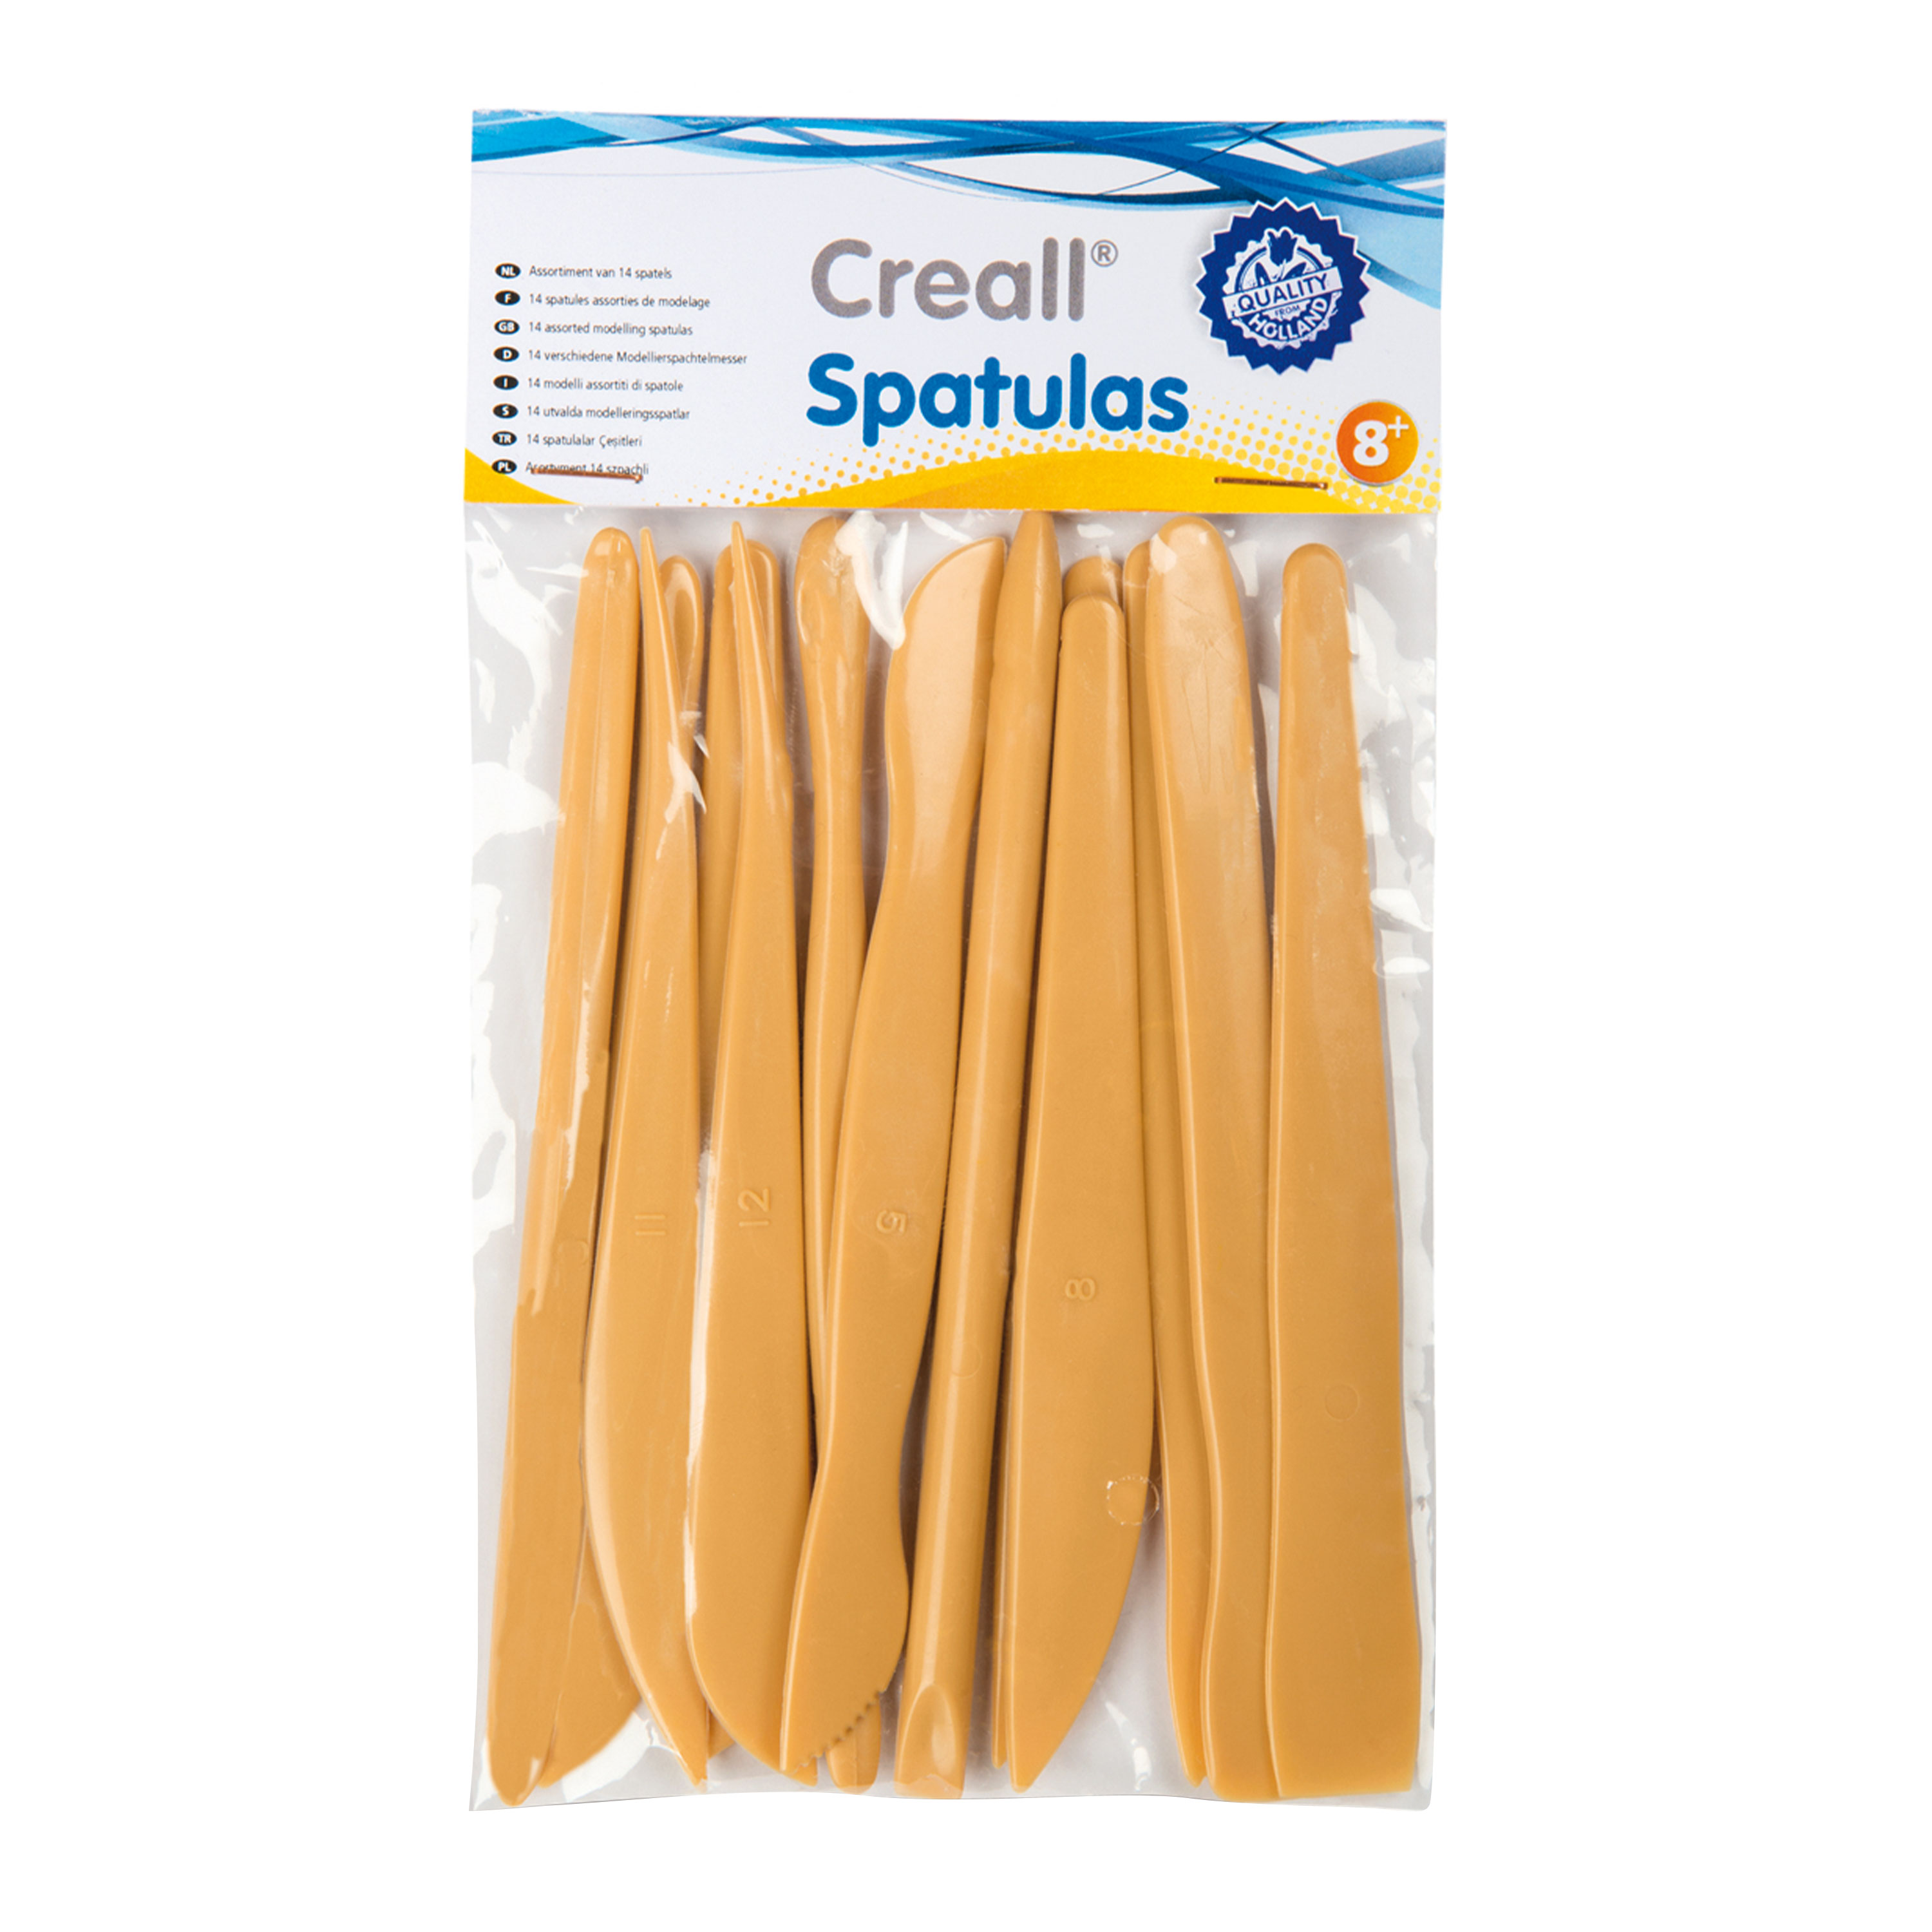 Creall Modellierspatel-Set 'Spatulas', 14 Teile